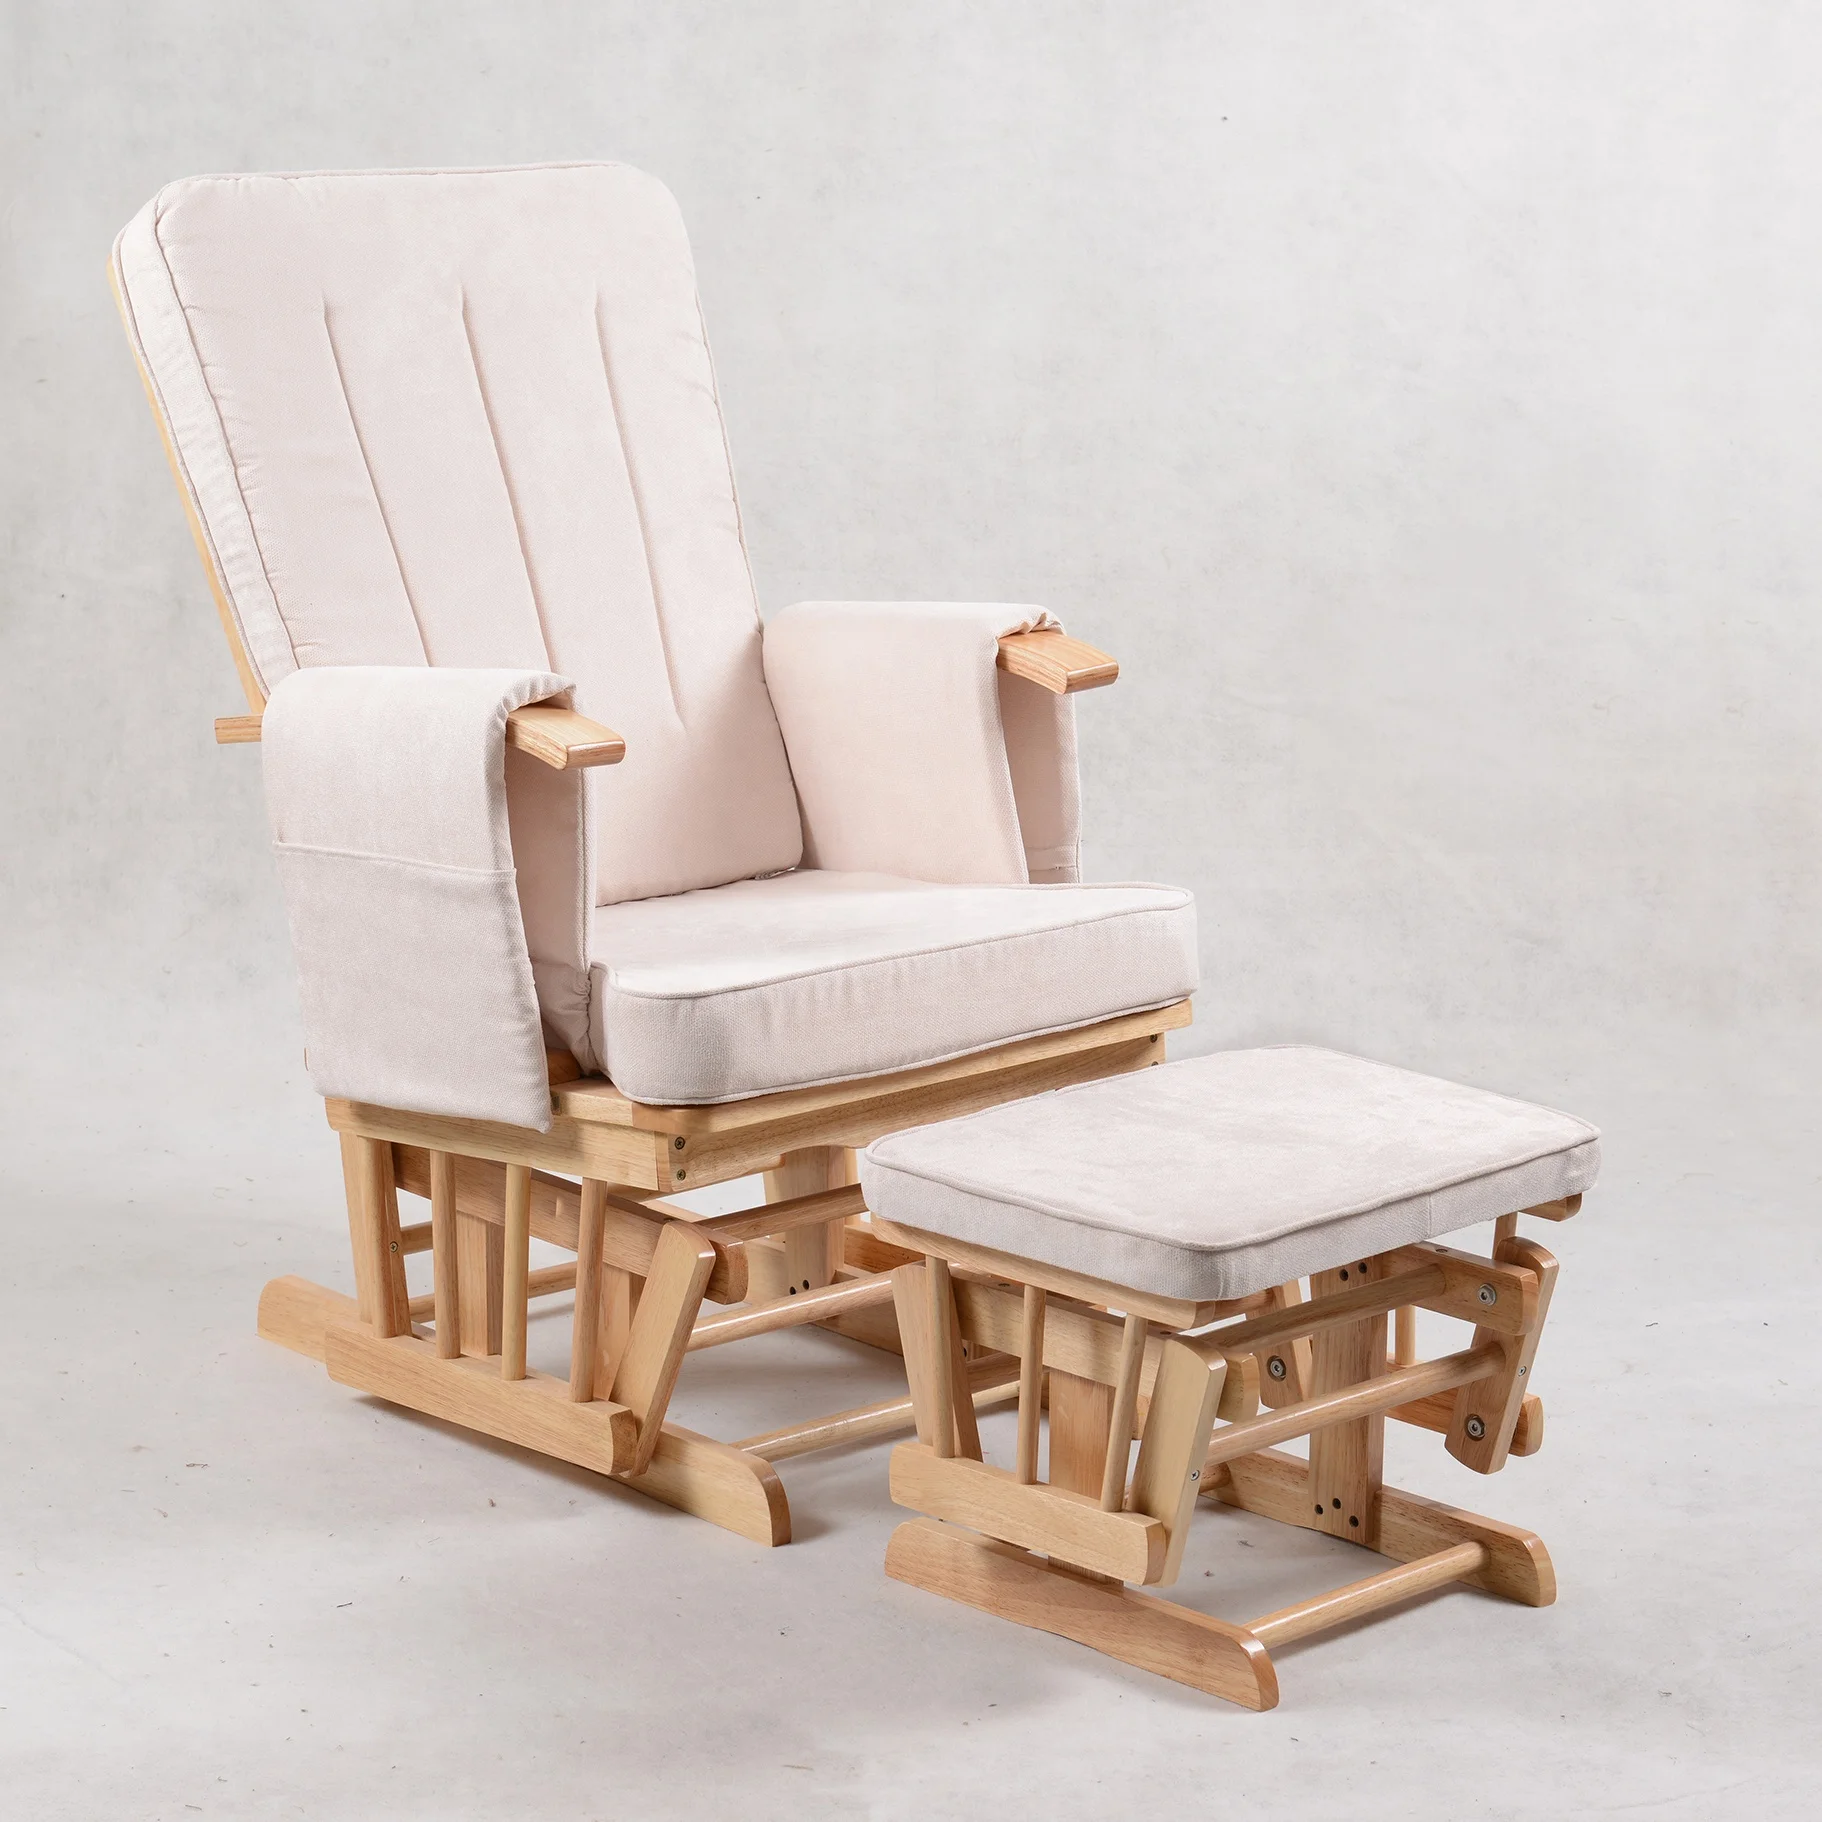 padded glider rocker chair